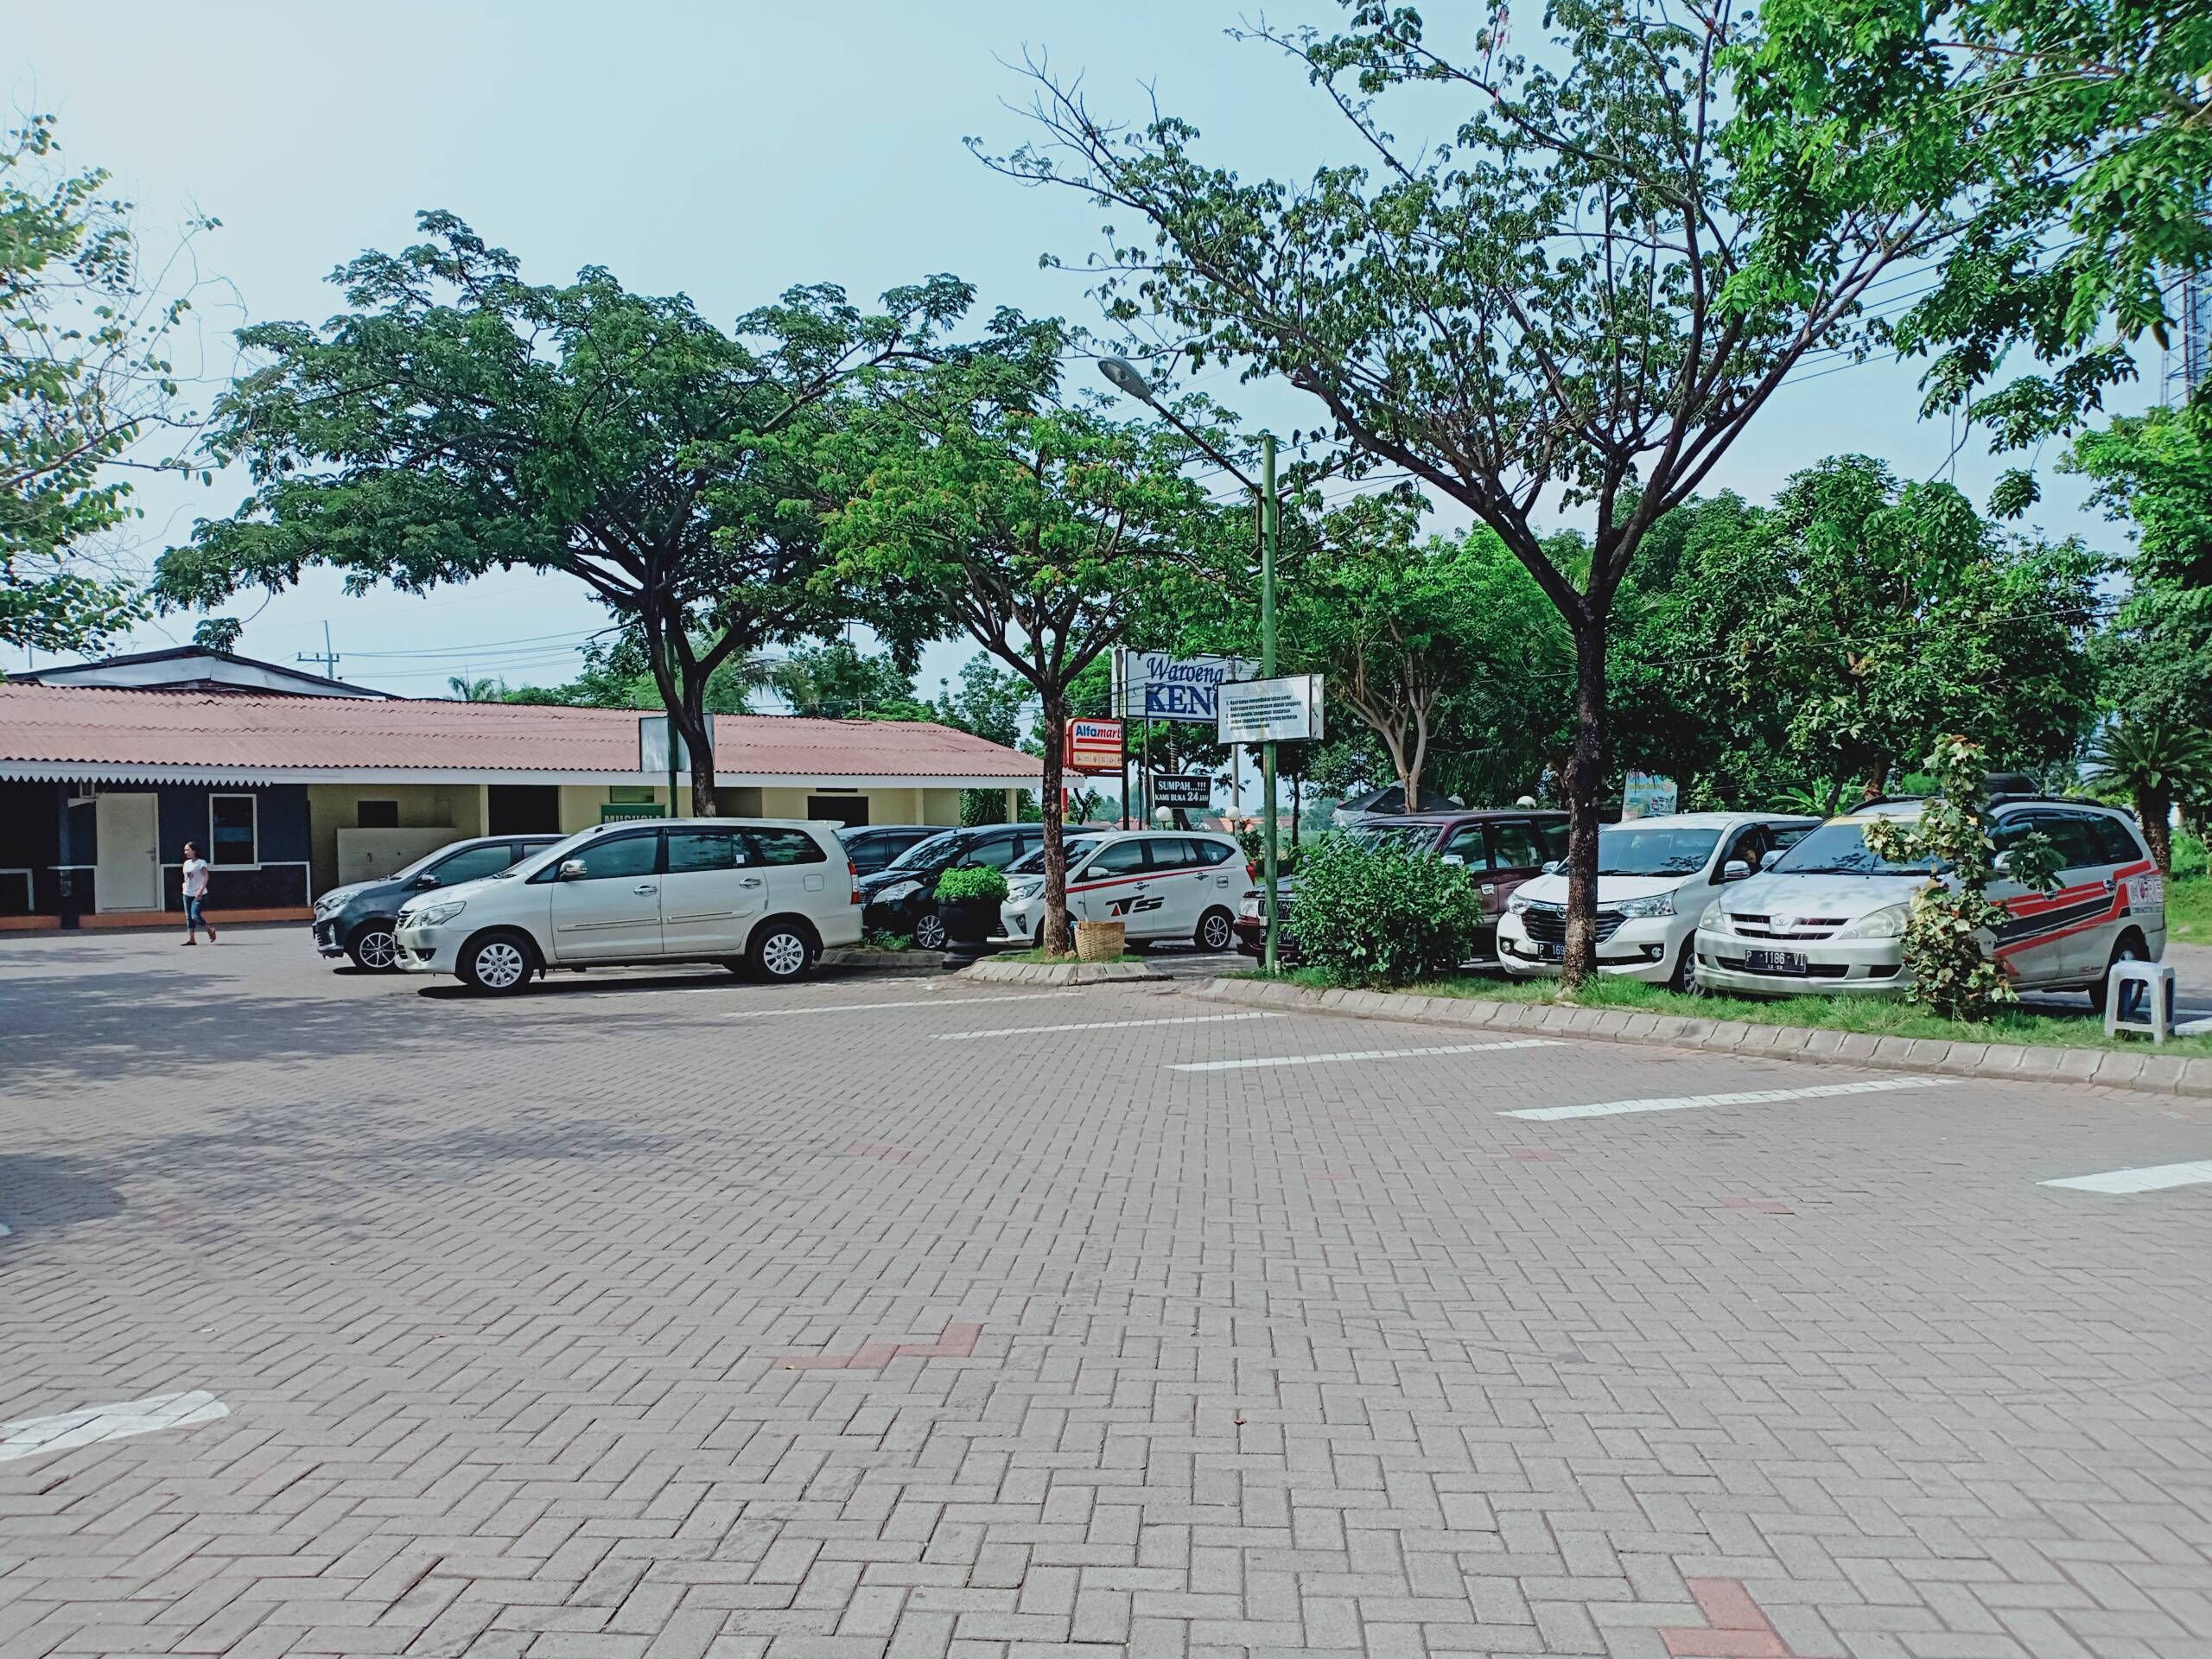 Area parkir yang luas dan mushola